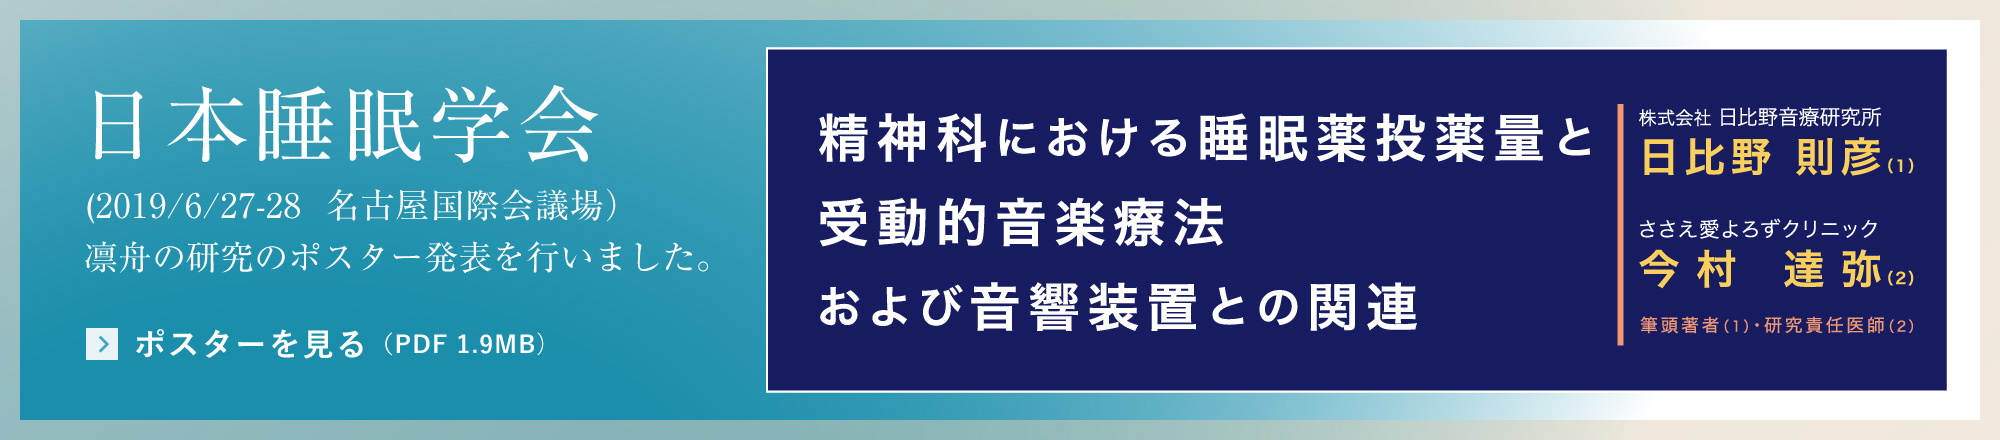 日本睡眠学会(2019/6/27-28  名古屋国際会議場）にて、凛舟の研究のポスター発表を行いました。ポスターを見る